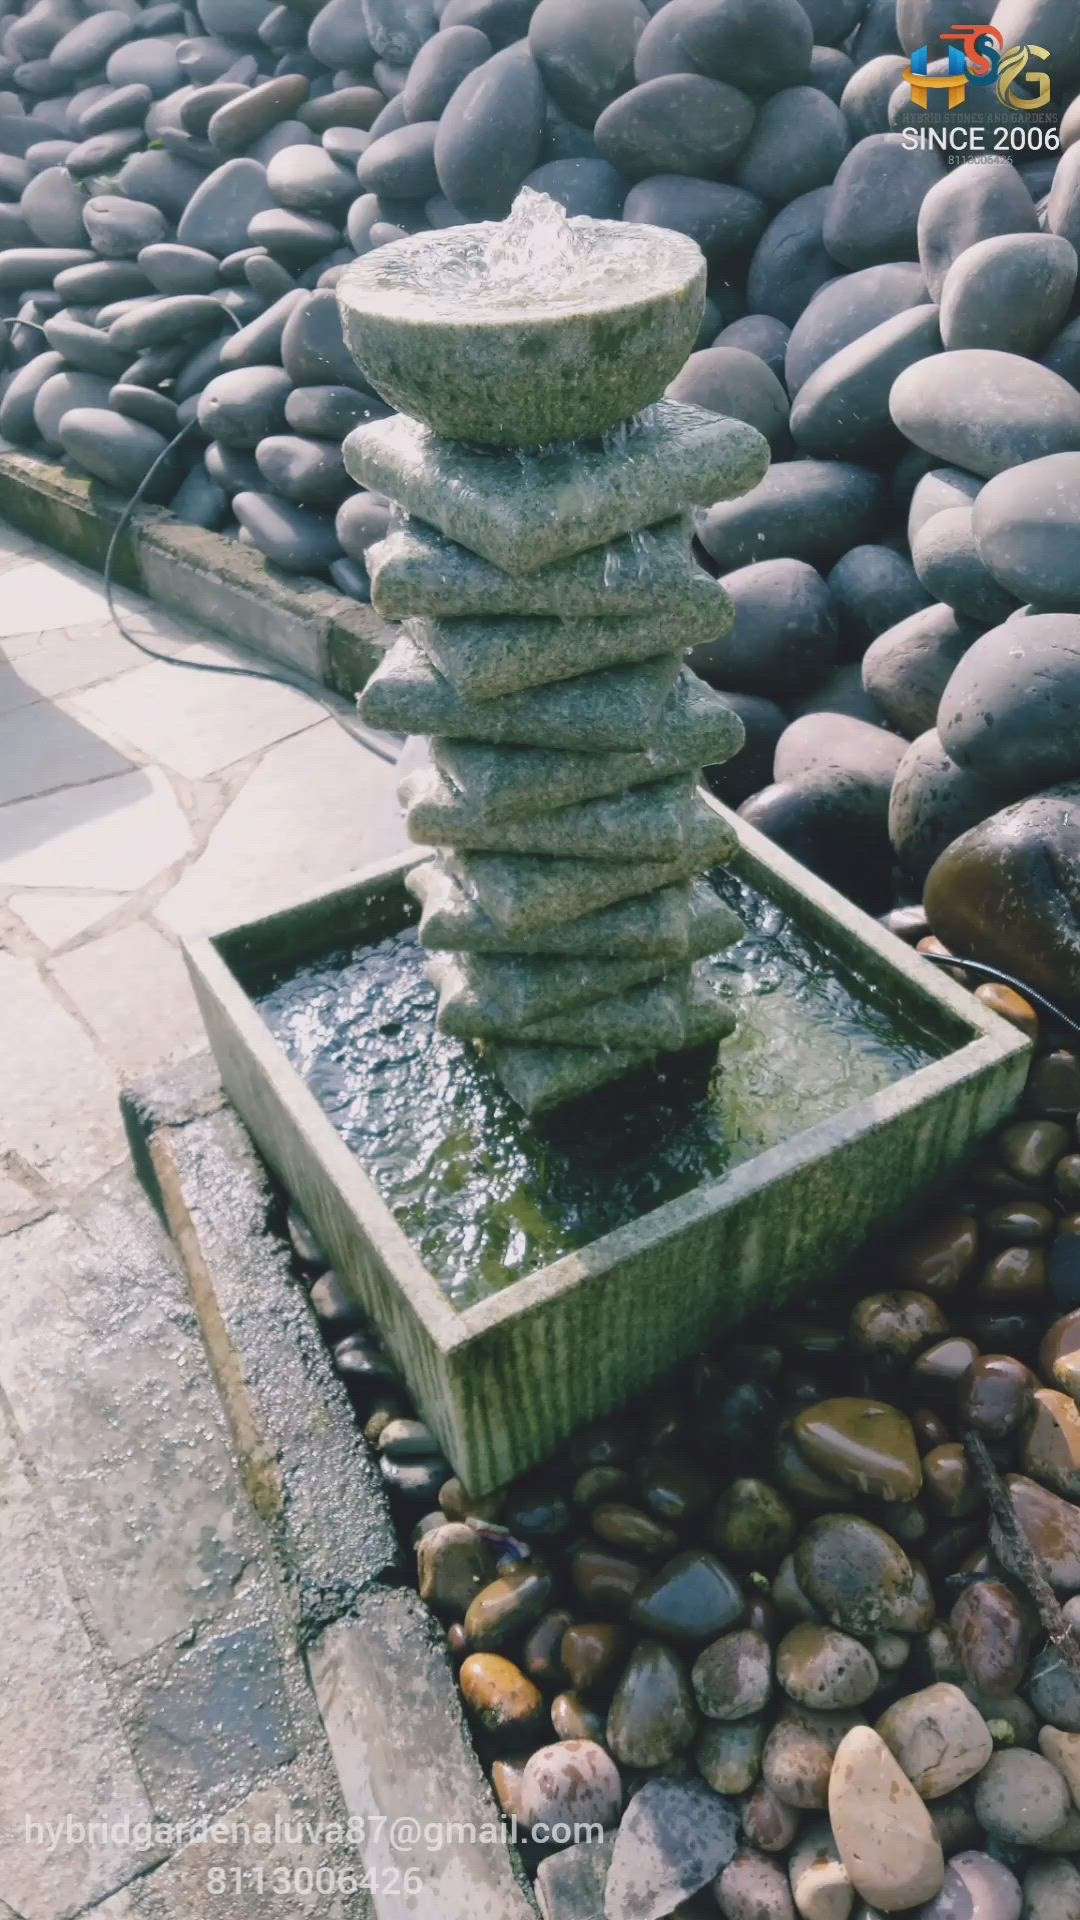 #artificialfountains
#fountains
#courtiyard